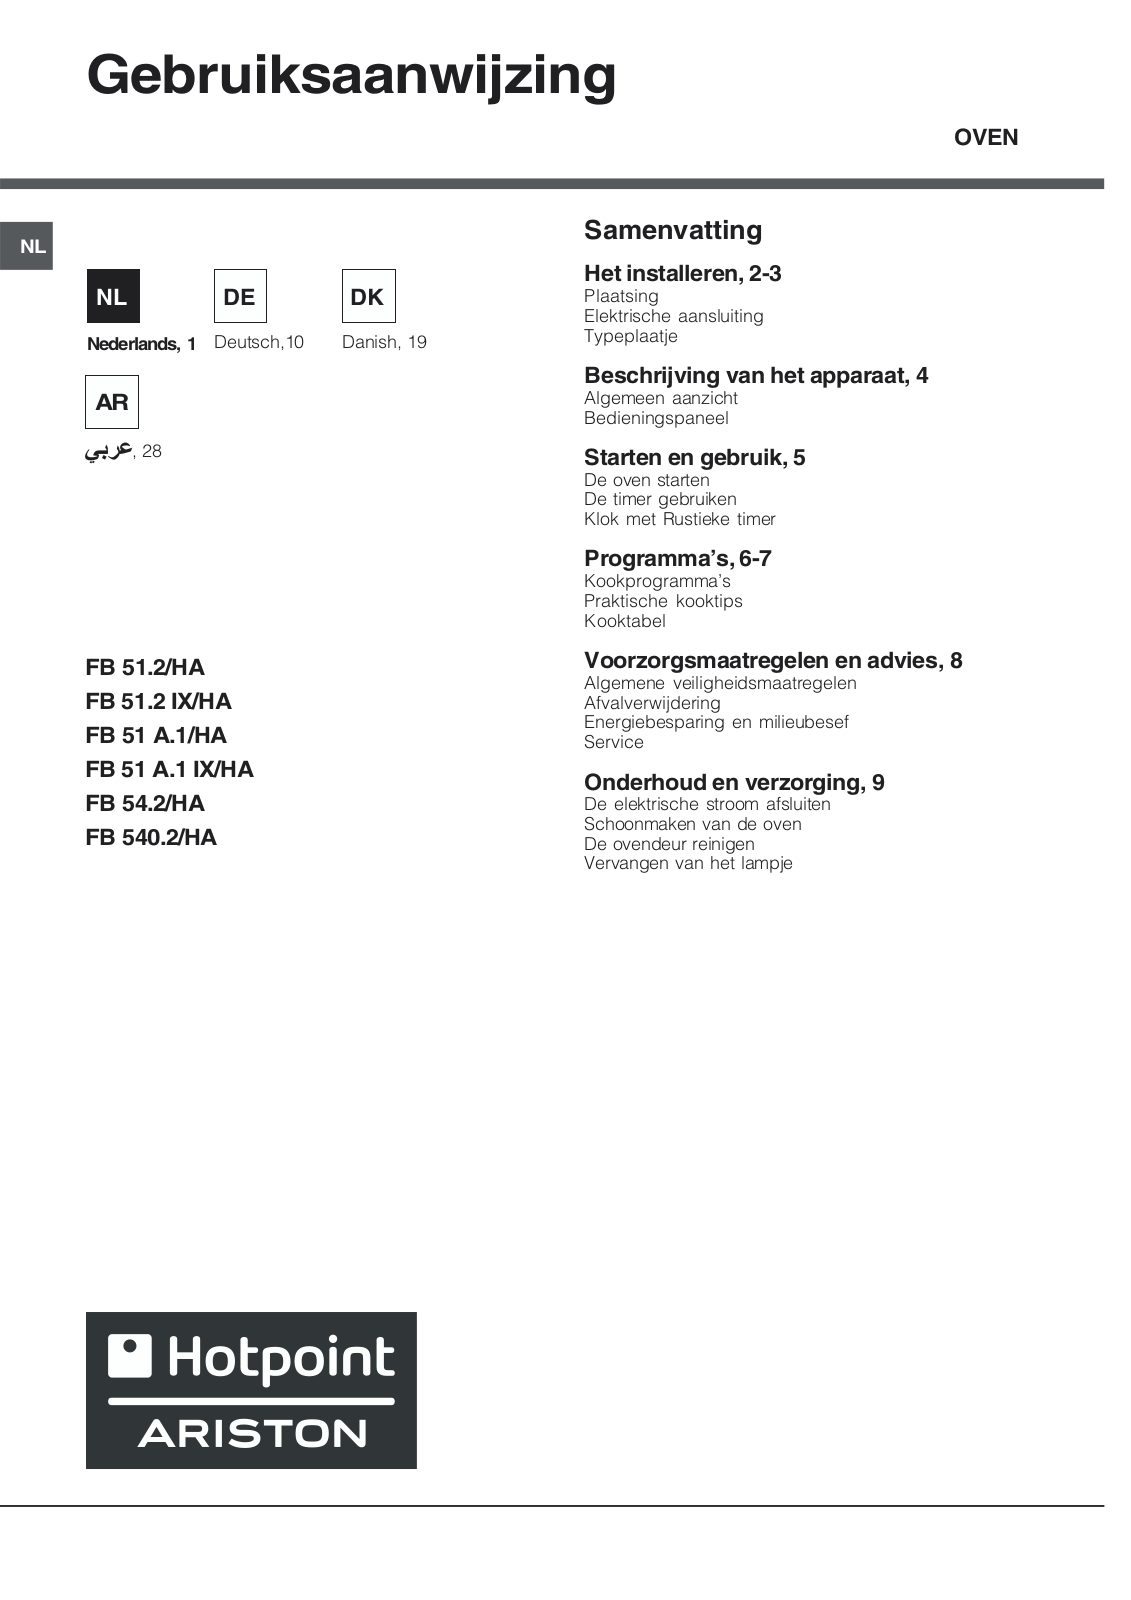 Hotpoint Ariston FB 51 A.1, FR 540.2, FB 51.2 IX/HA, FB 51.2, FB 51 A.1 IX/HA Manual